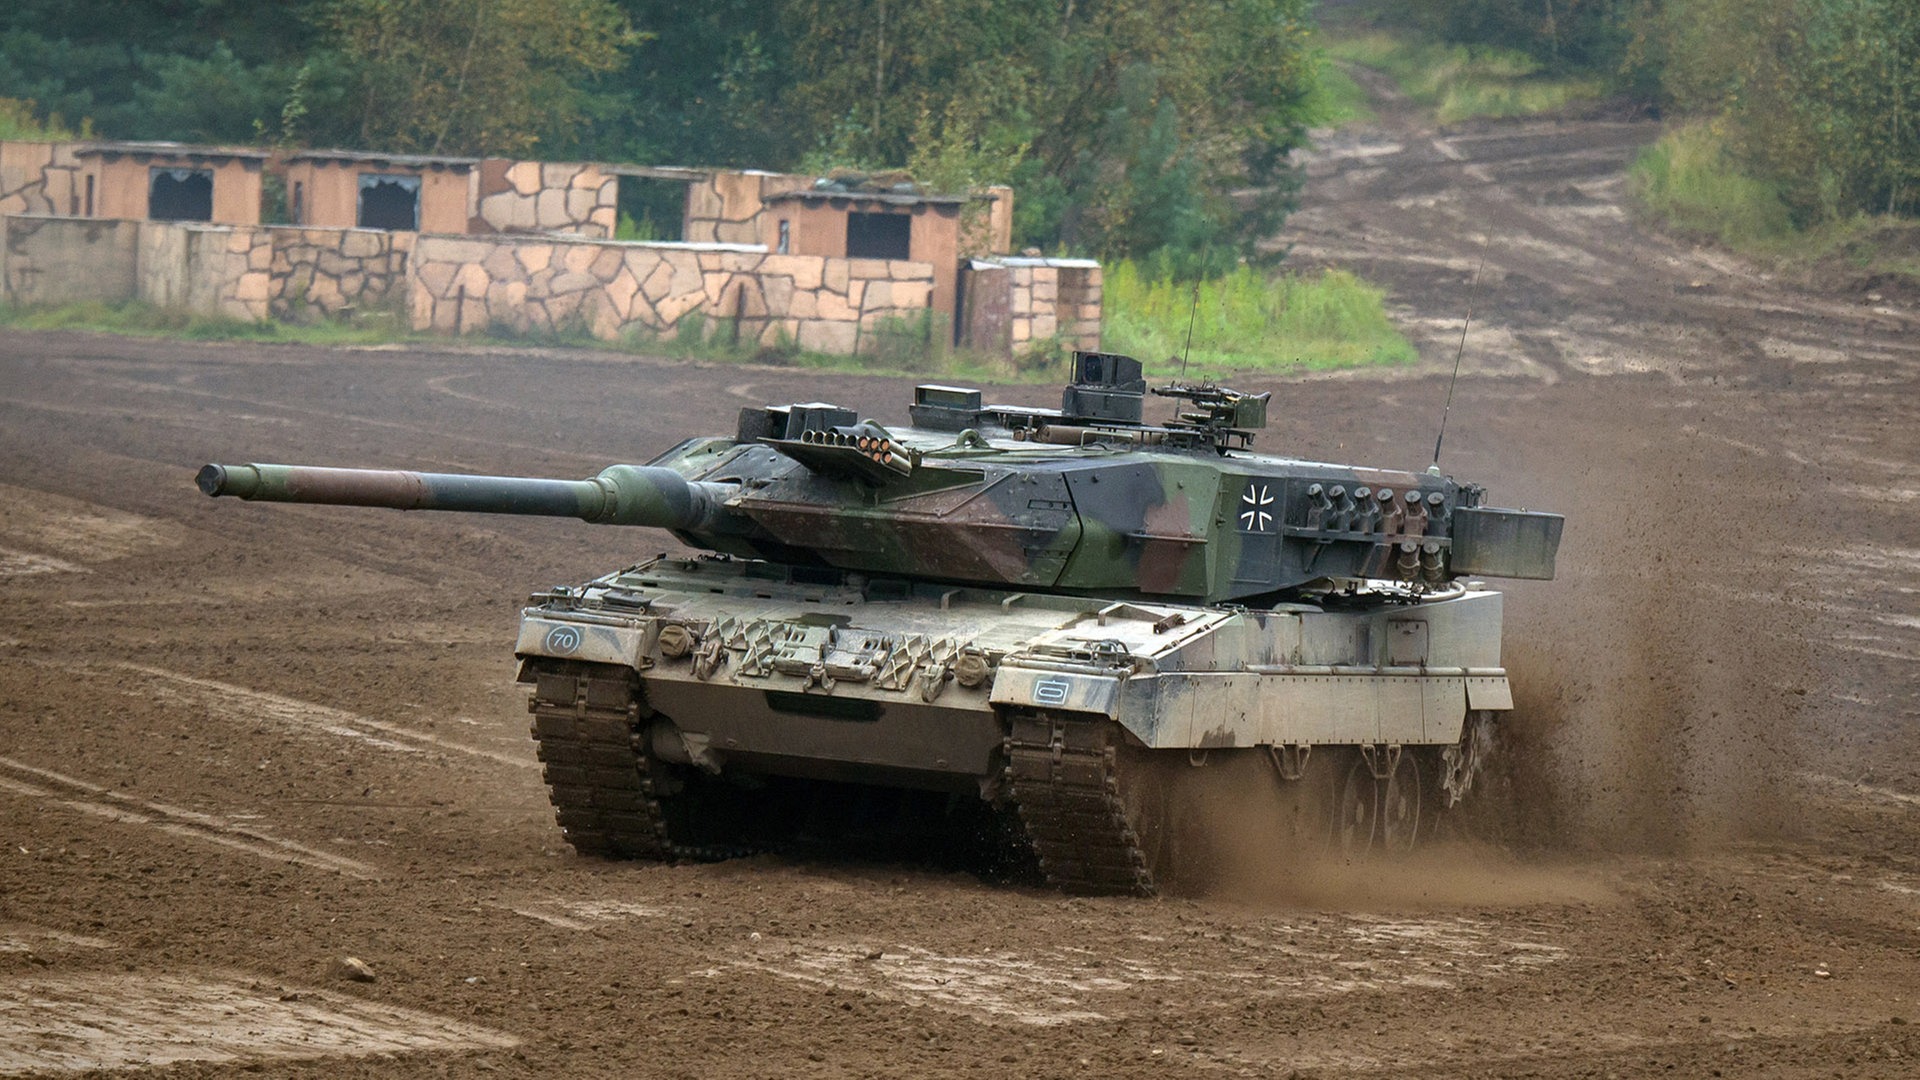 Las entregas no están lejos: El ejército ucraniano completa el programa de entrenamiento de carros Leopard 2 en Alemania